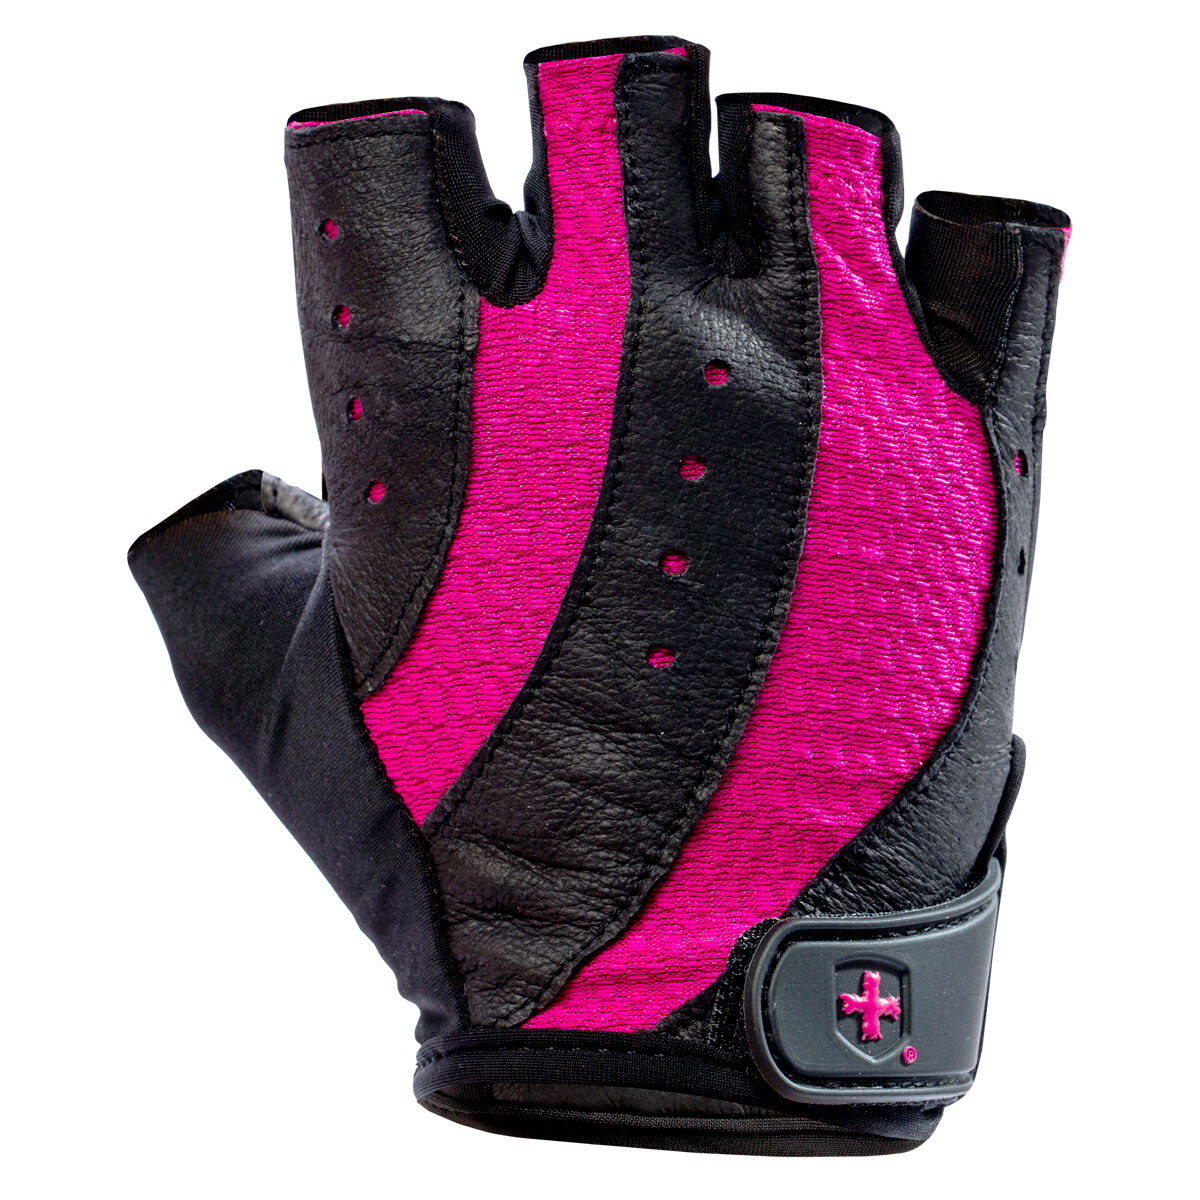 Harbinger Womens Pro Training Gloves Black / Pink M, Black / Pink, rebel_hi-res